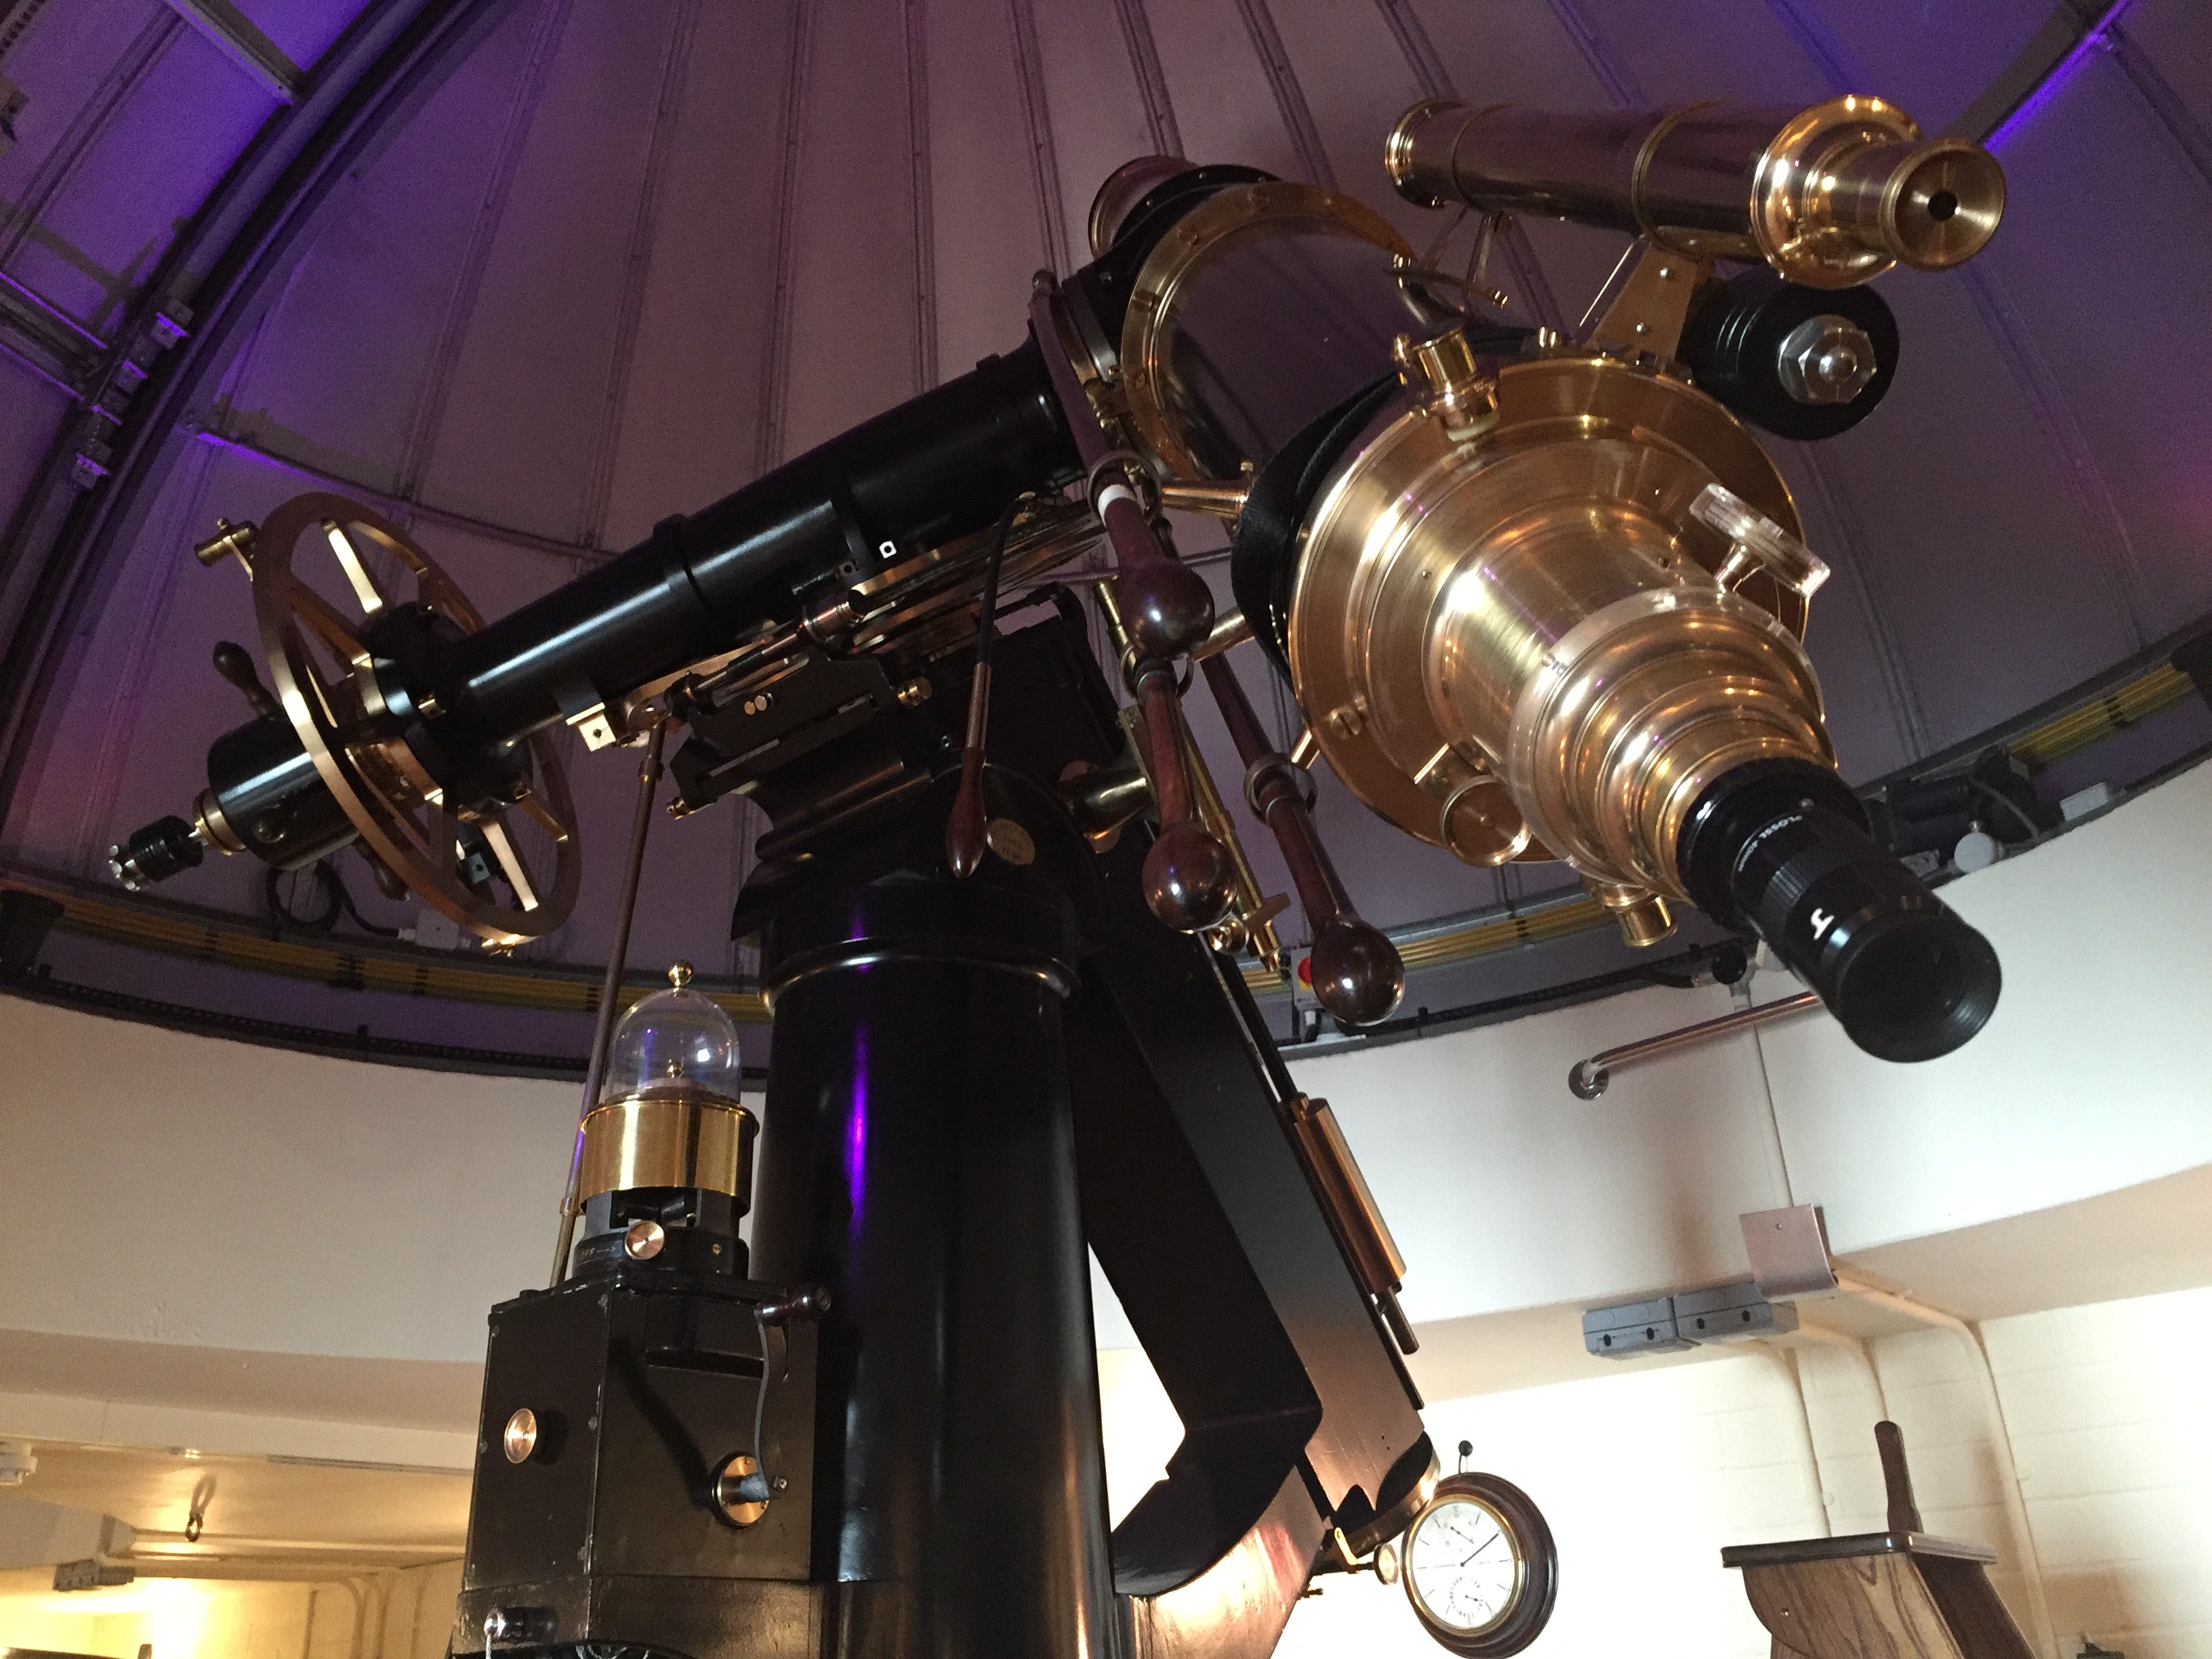 University of London Observatory